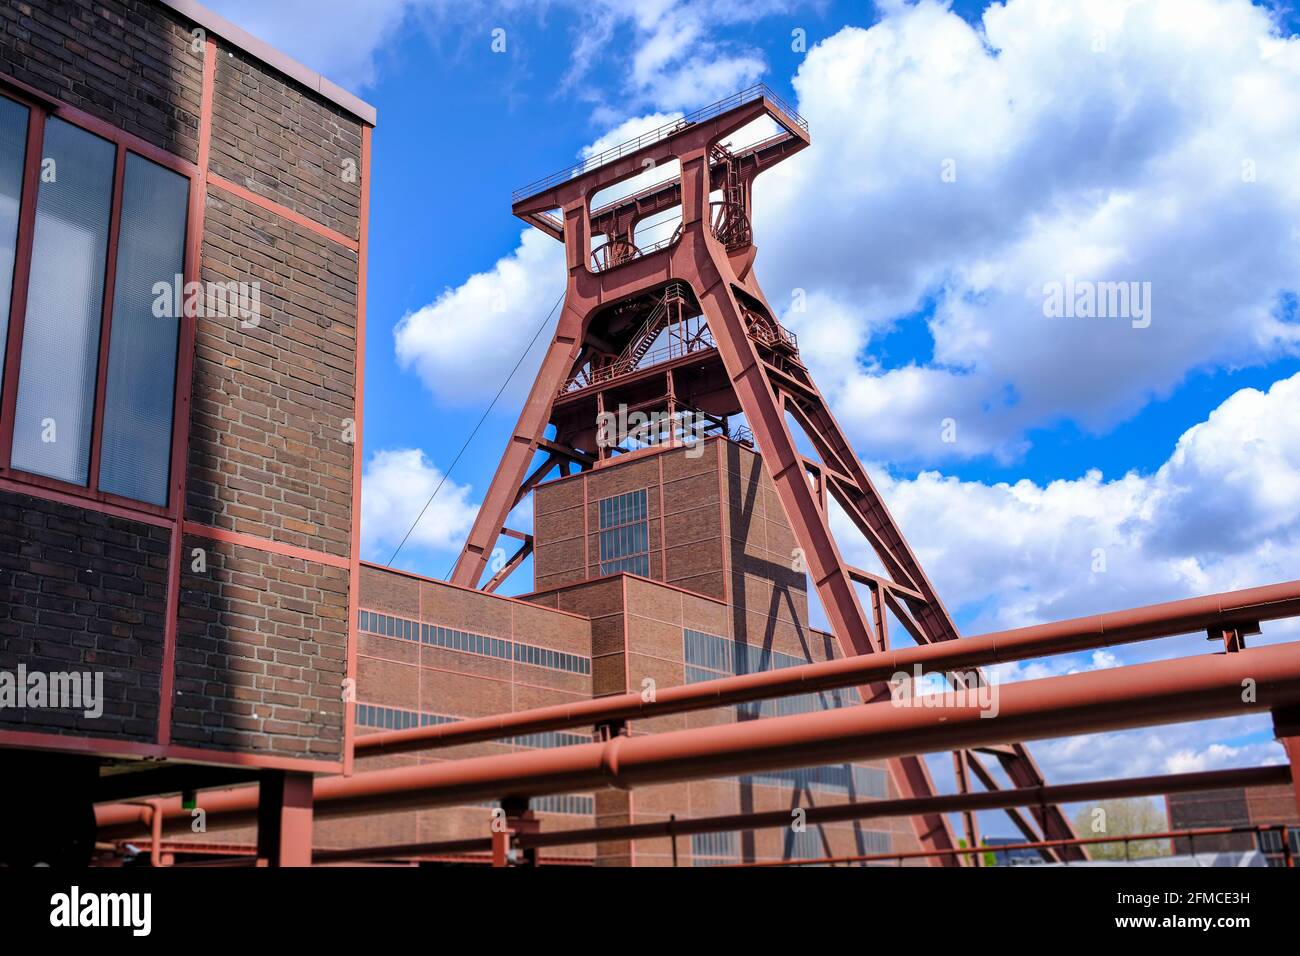 07.05.2021, Essen, Nordrhein-Westfalen, Deutschland - Foerderturm der Zeche Zollverein in Essen Stock Photo